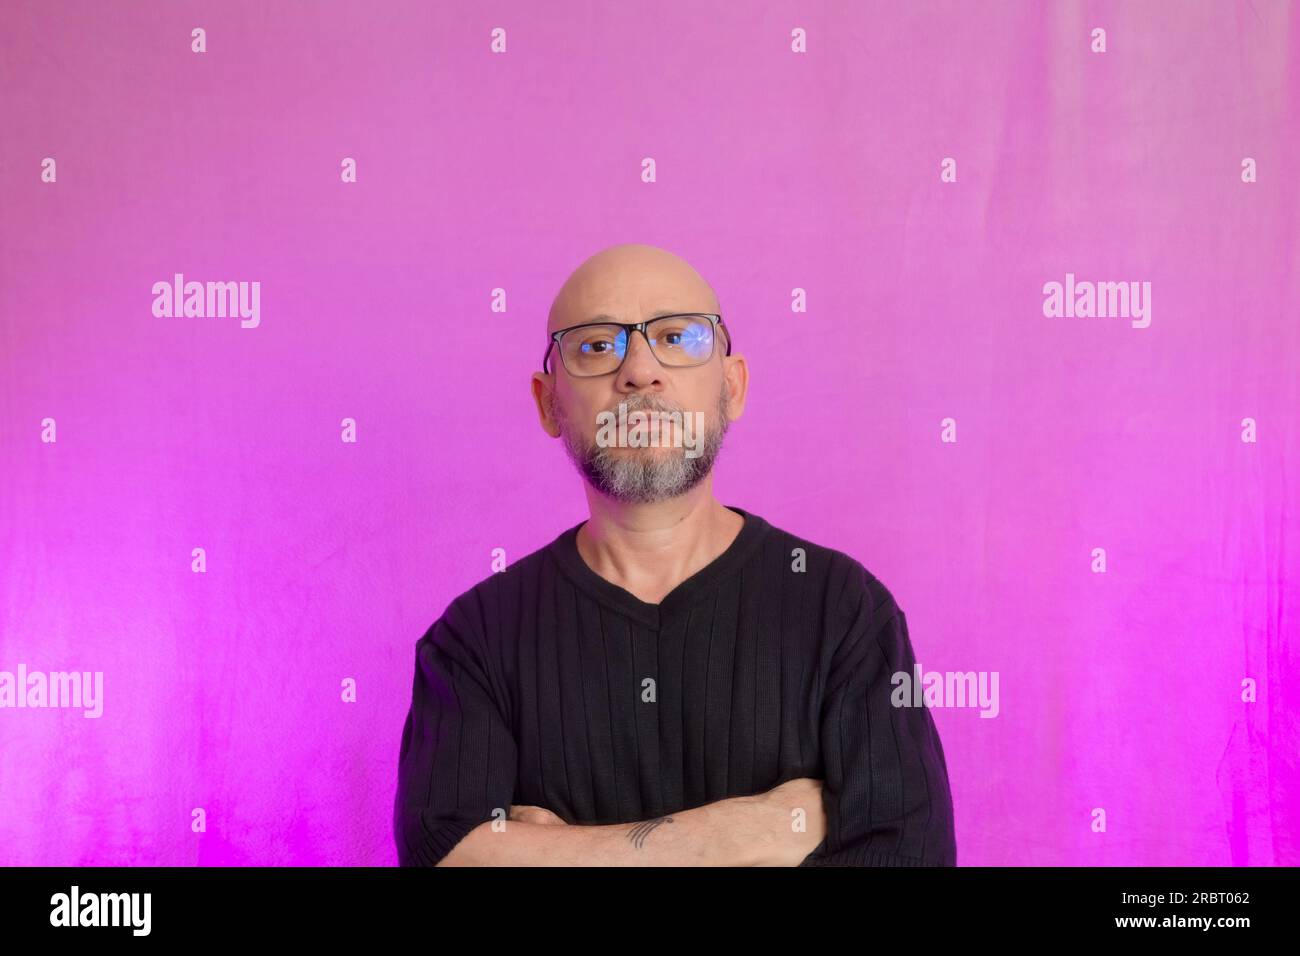 Ritratto di un serio uomo di 50 anni con barba e testa calva. Isolato su sfondo rosa. Foto Stock